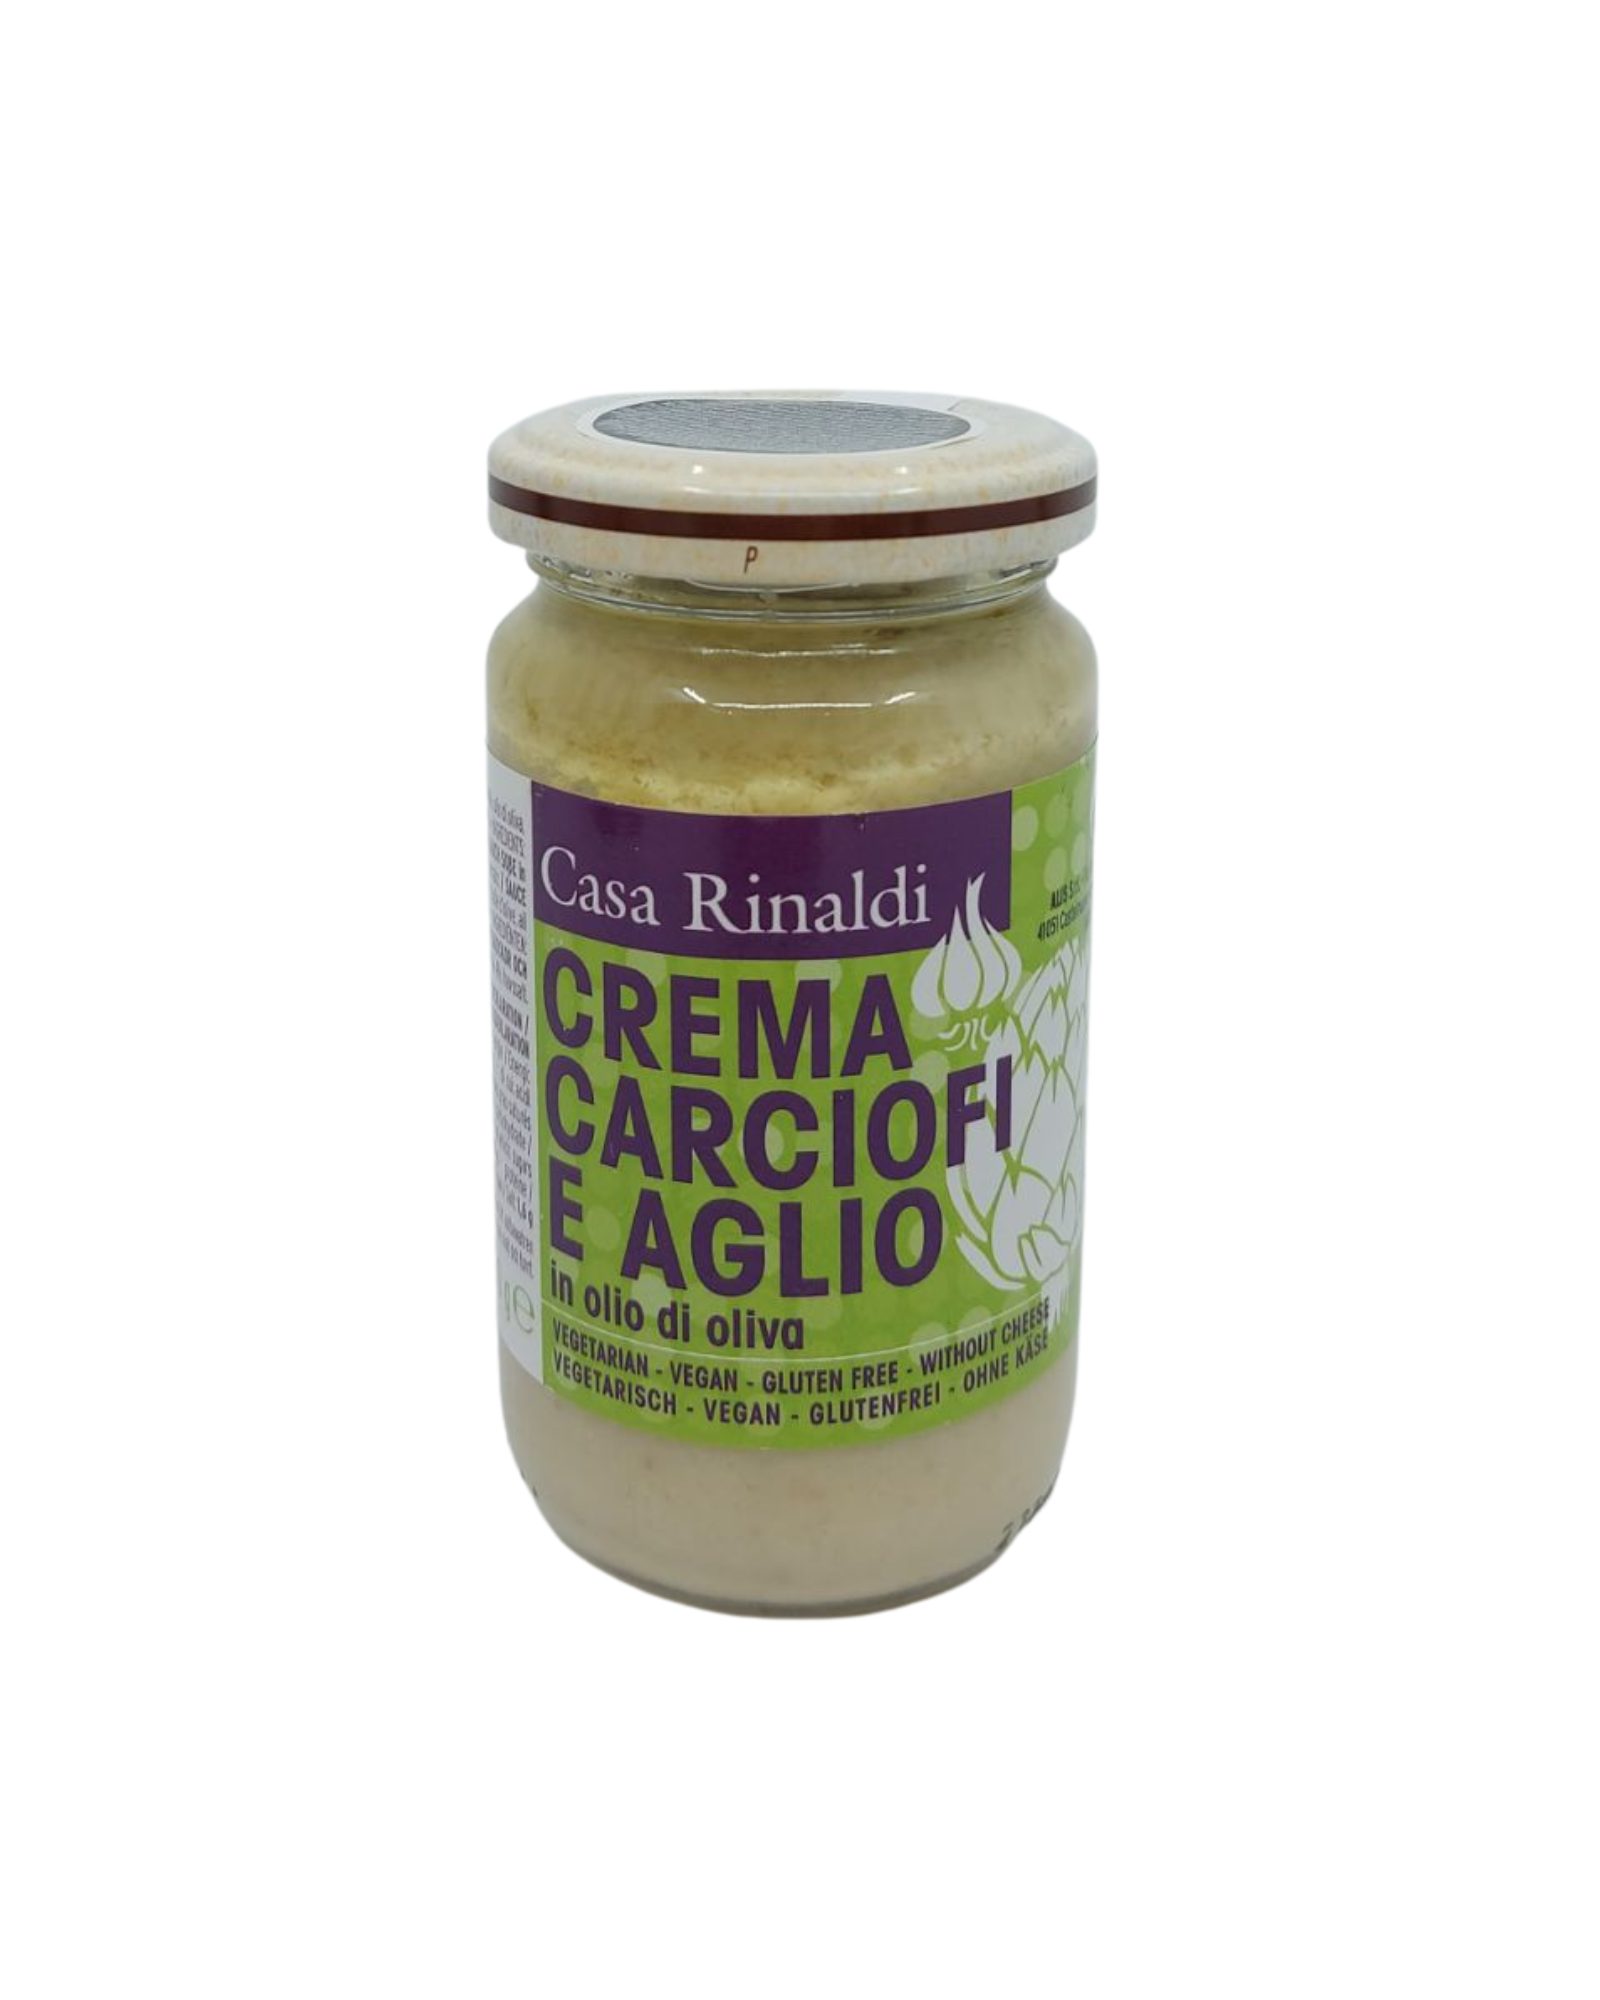 Artichoke and garlic cream